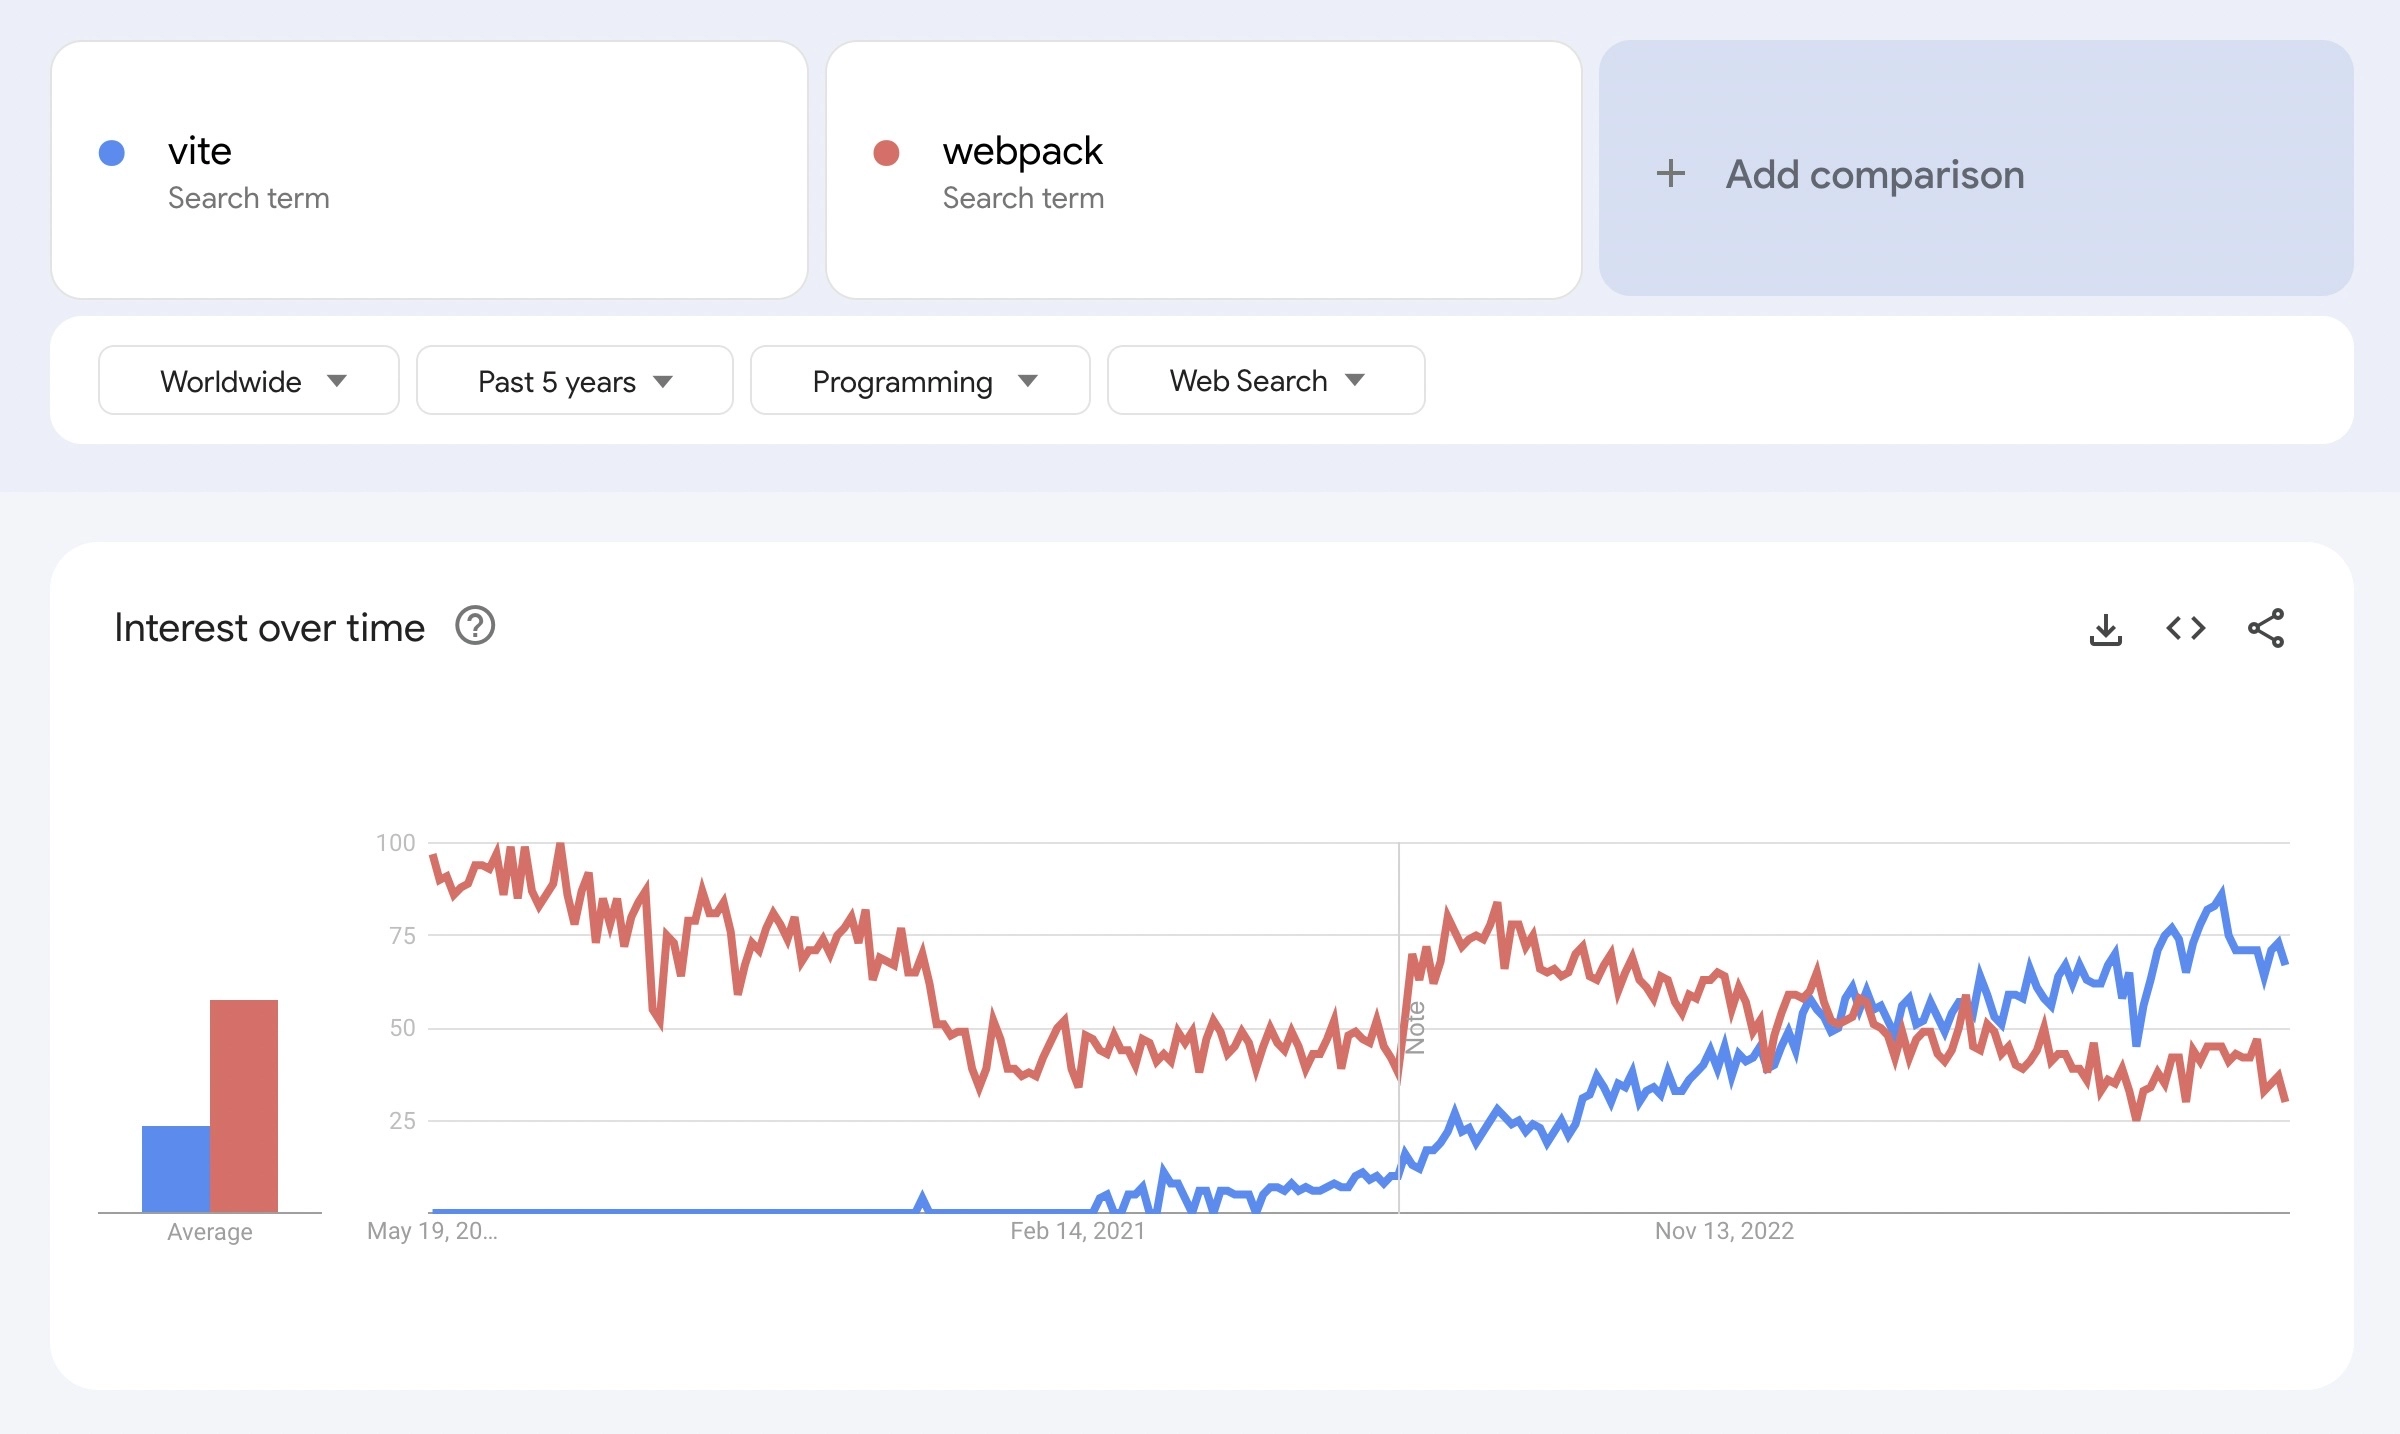 Vite vs Webpack trends